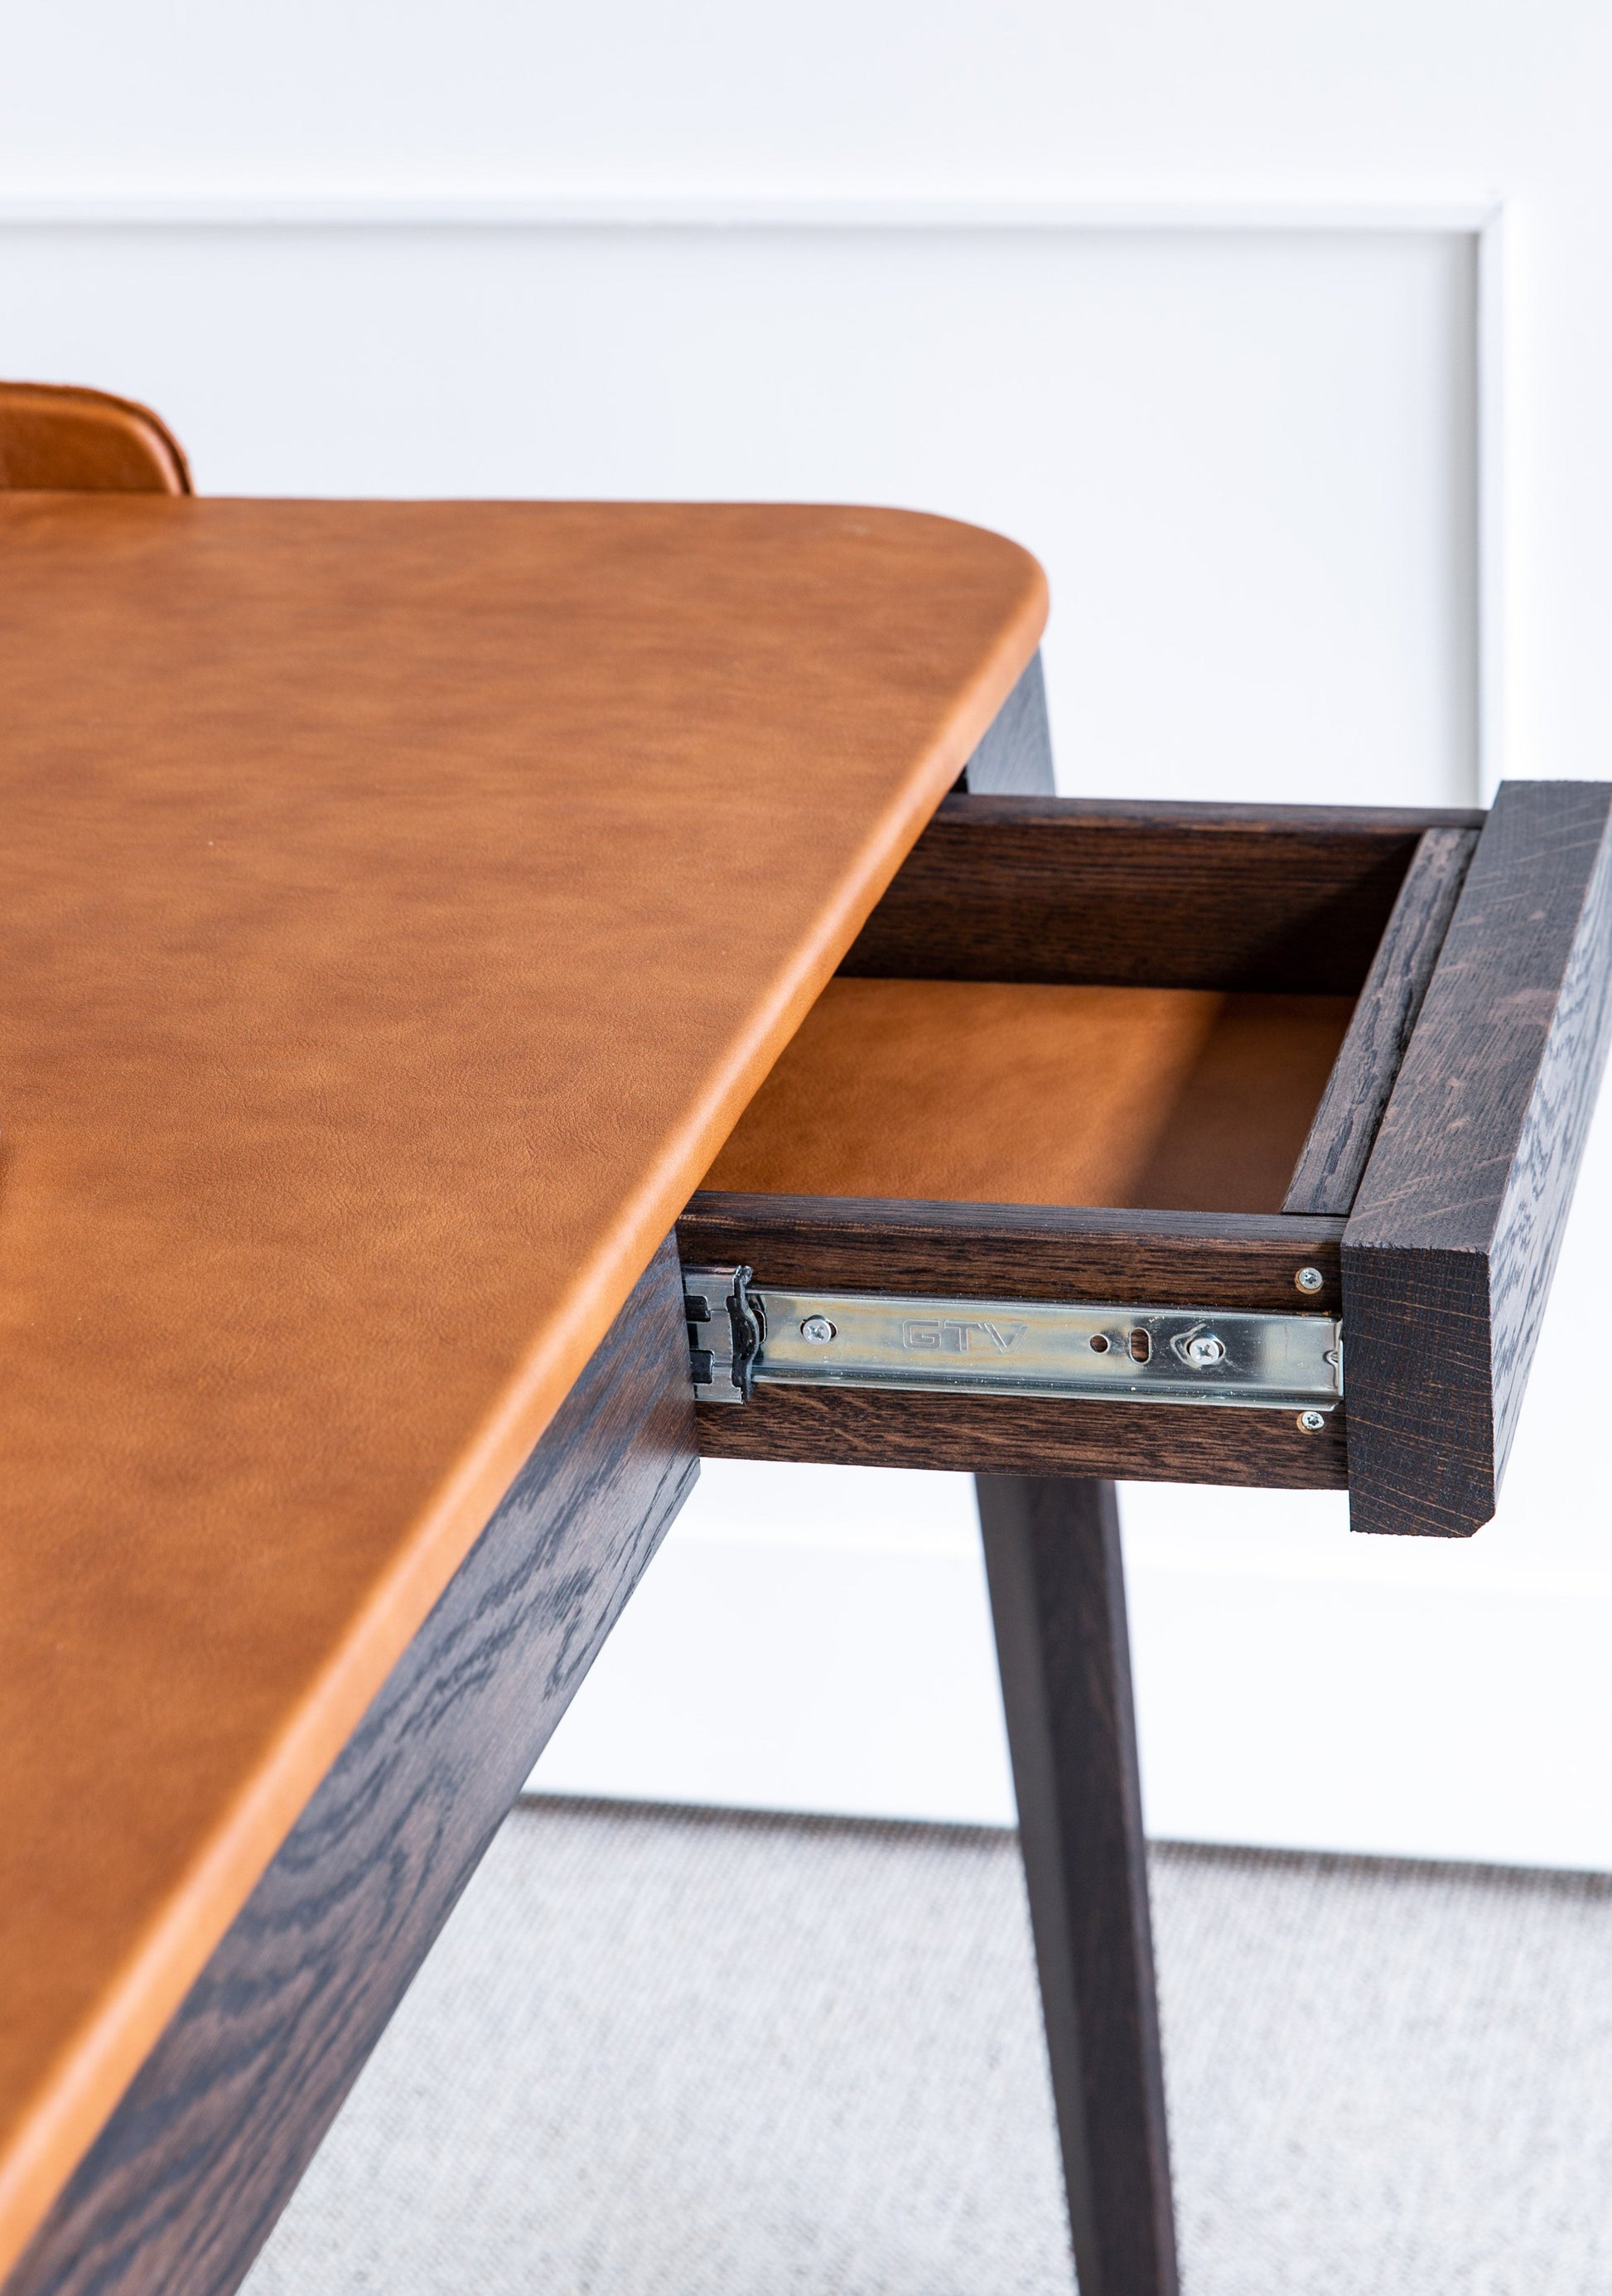 Skrivebordet Pegasus er for de som leter etter et eksklusivt design og en original løsning. Skrivebordet vil passe like godt inn i et hjemmekontor som i bedriftens kontorinteriør. Skrivebordet er laget ved å kombinere heltre eik og naturlig skinn og kommer til å gi deg en eksklusiv, funksjonell og estetisk fin arbeidsstasjon.